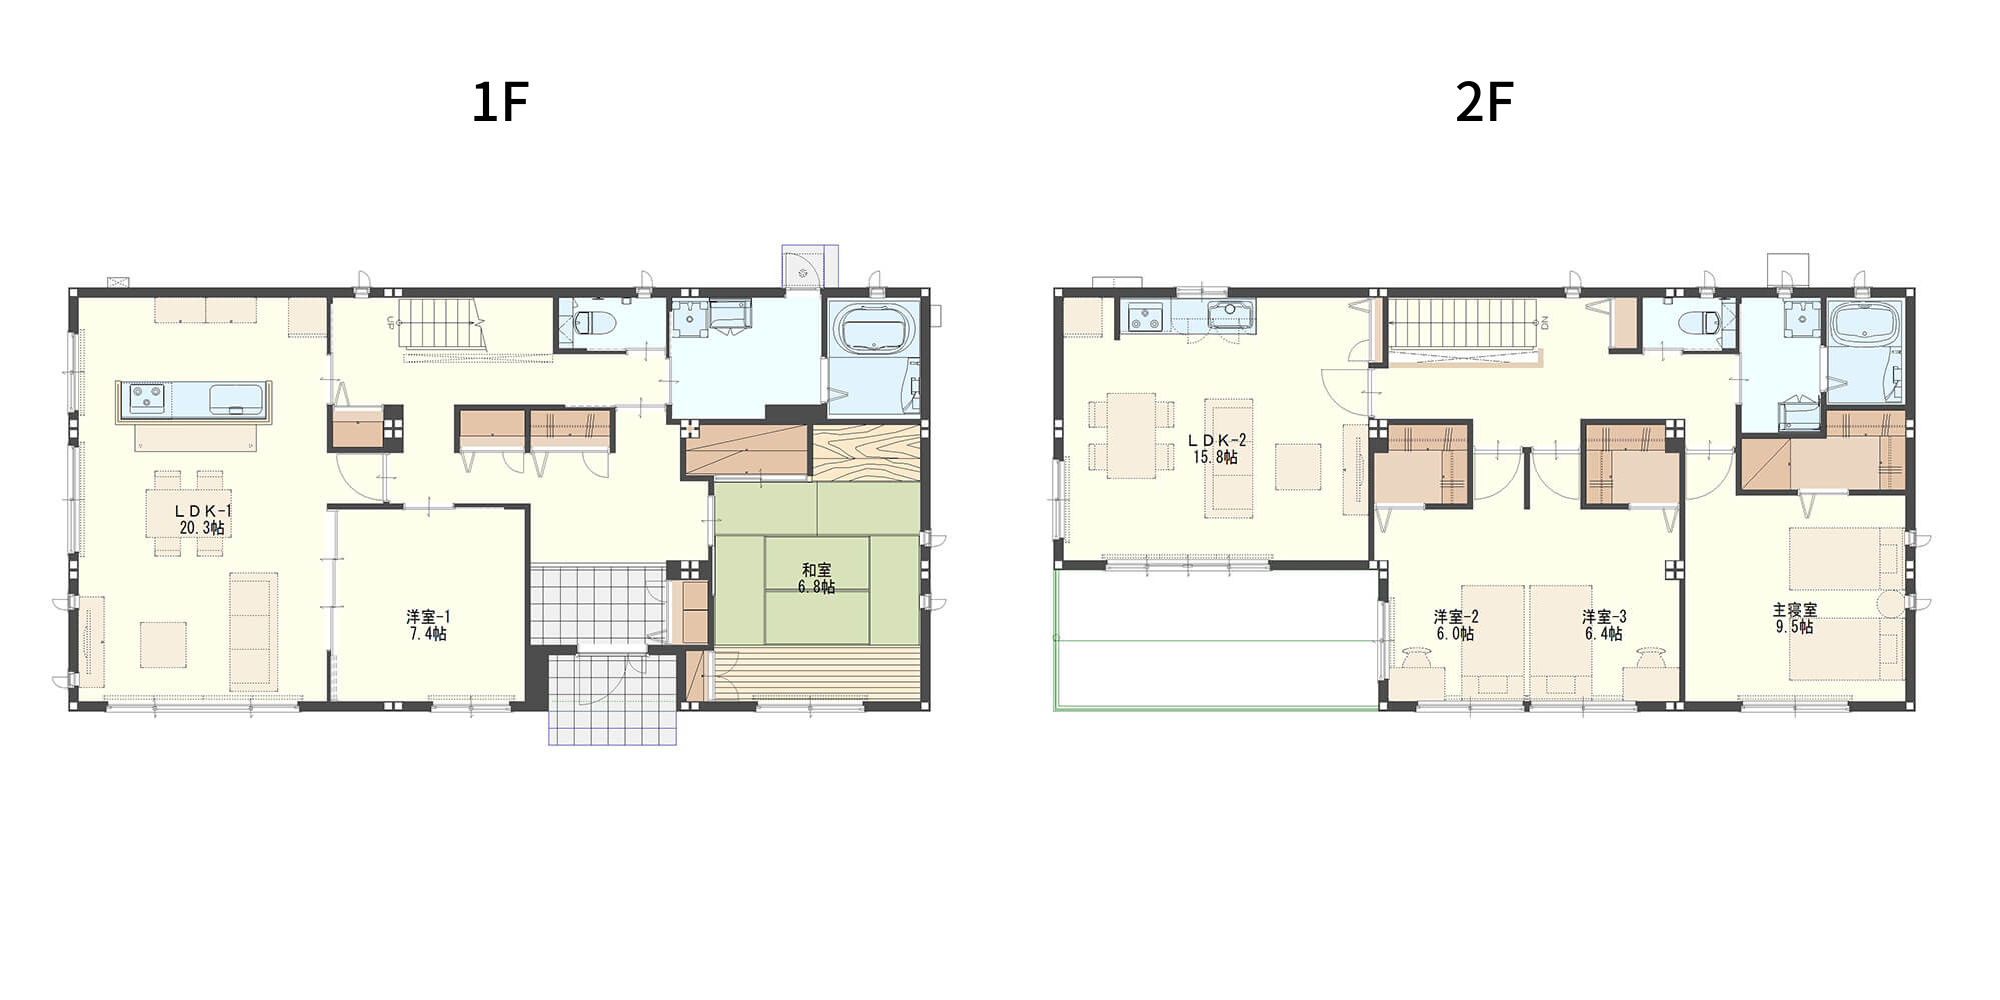 【61.4坪】内階段でつながる上下分離タイプの二世帯住宅の間取り図